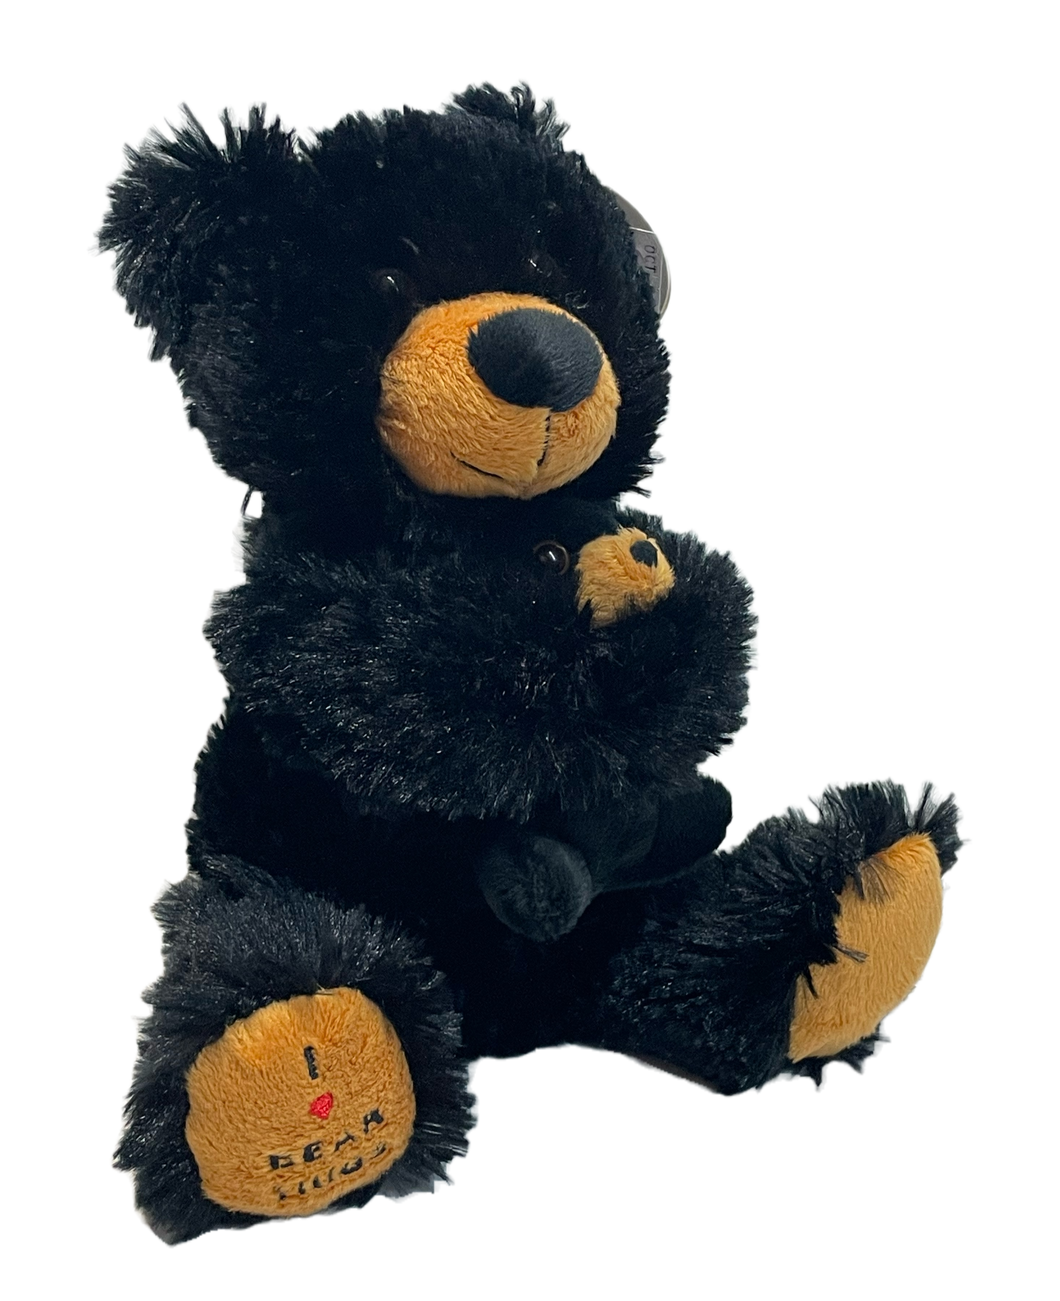 Bear Hugs Plush